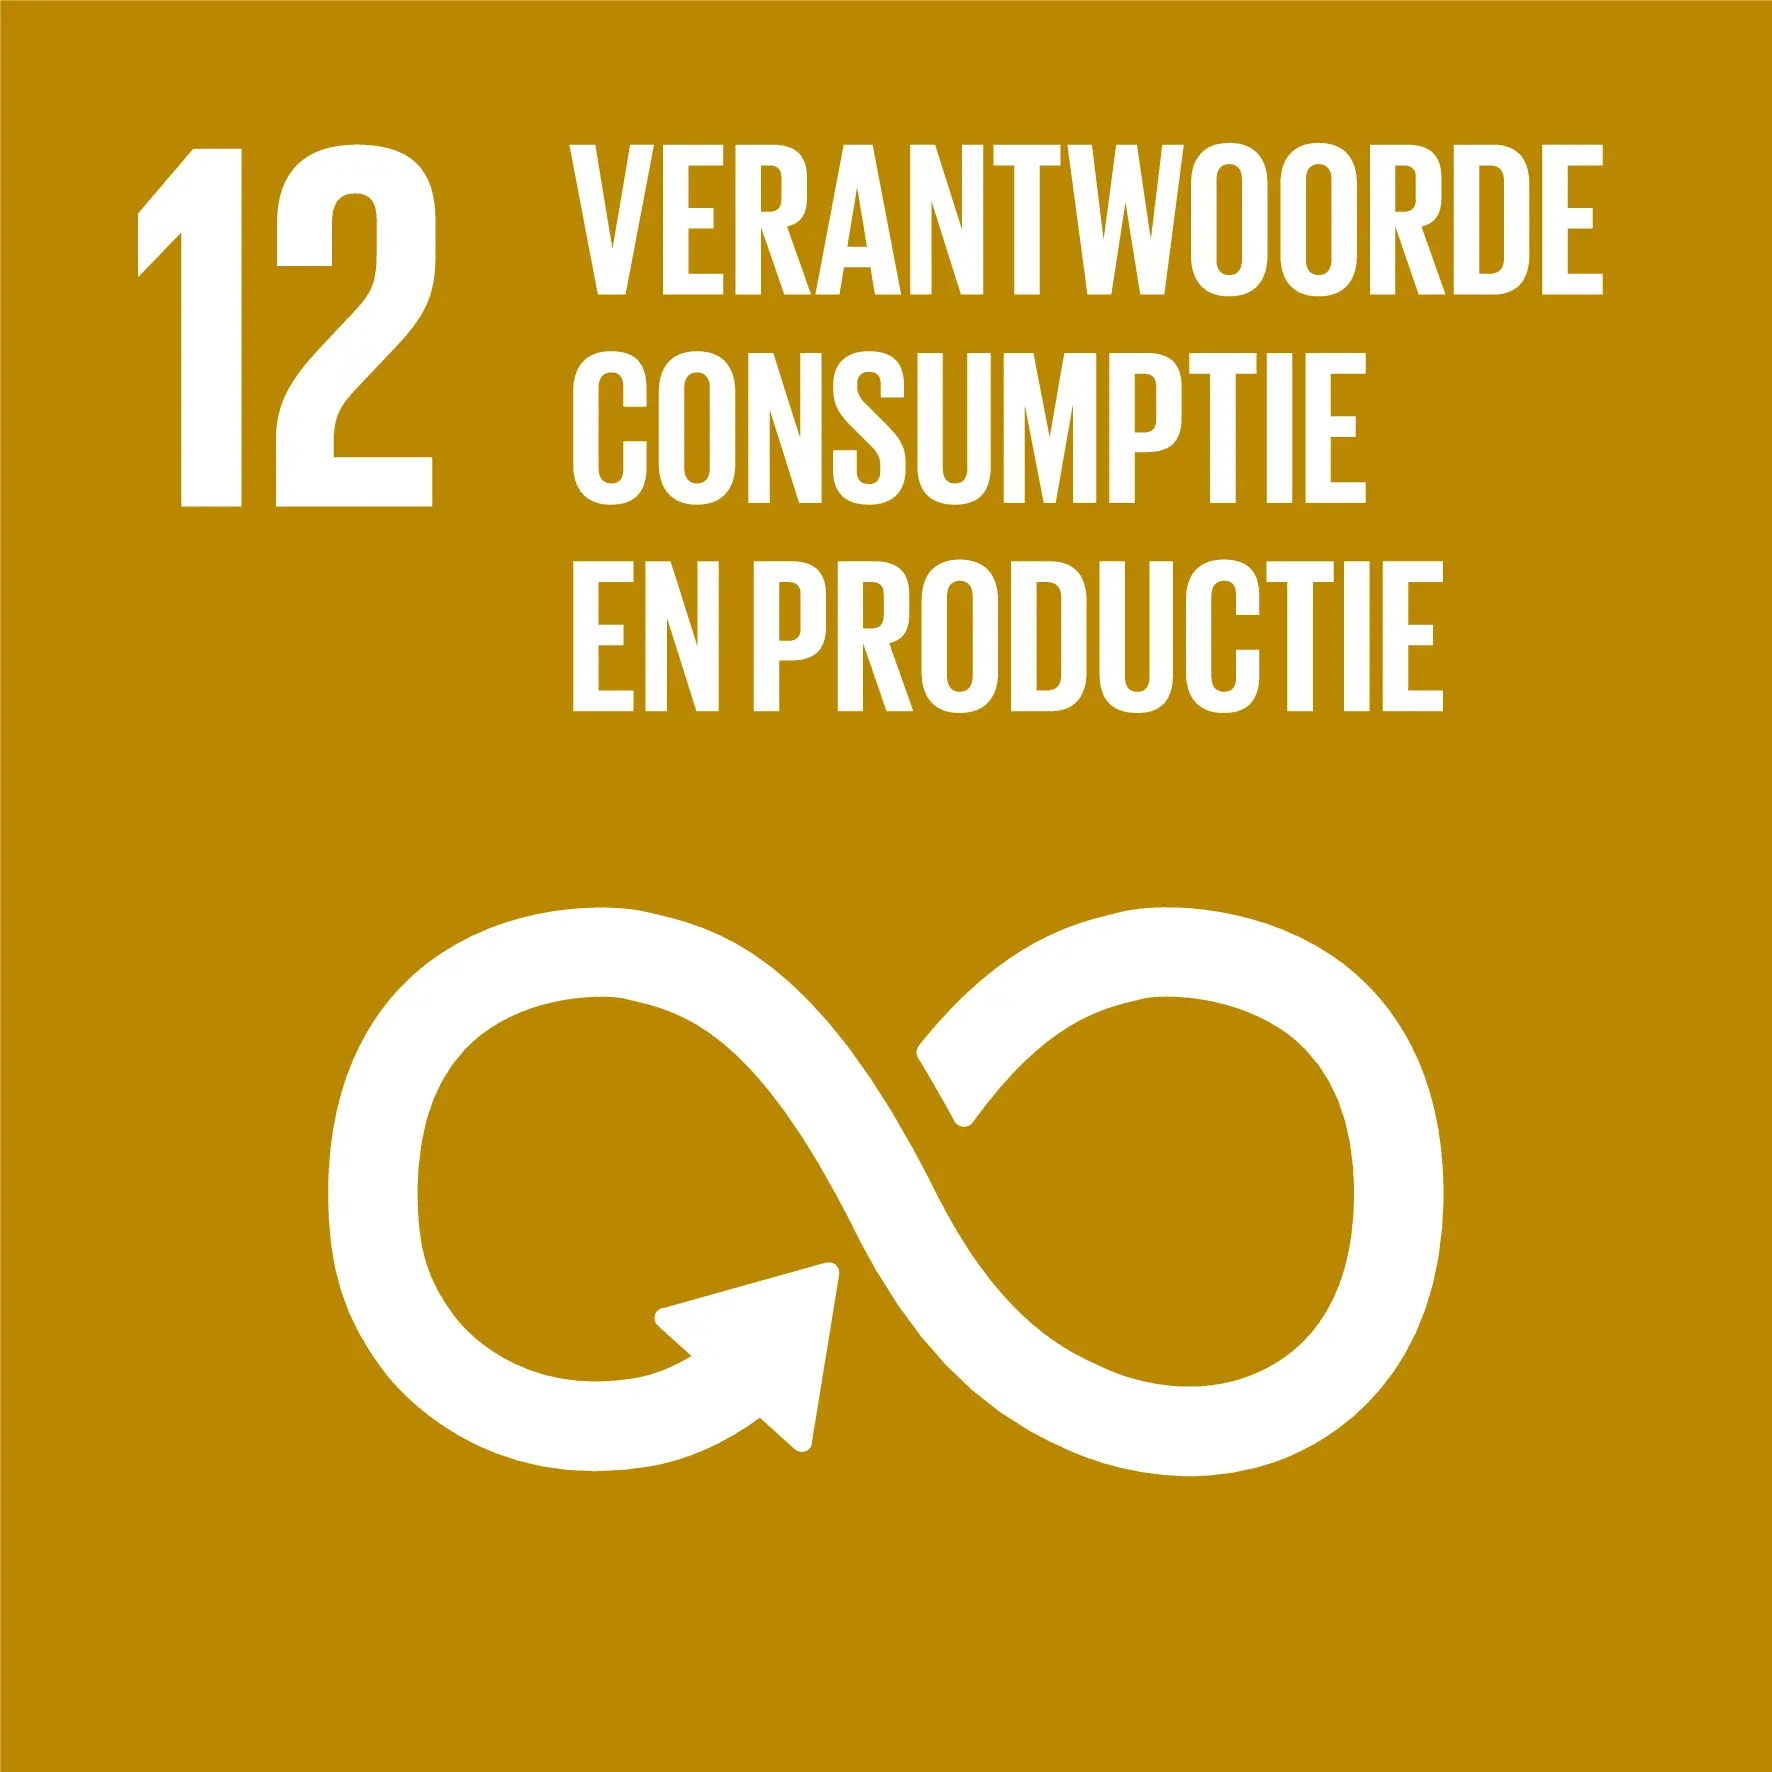 SDG 12. Verantwoorde consumptie en productie